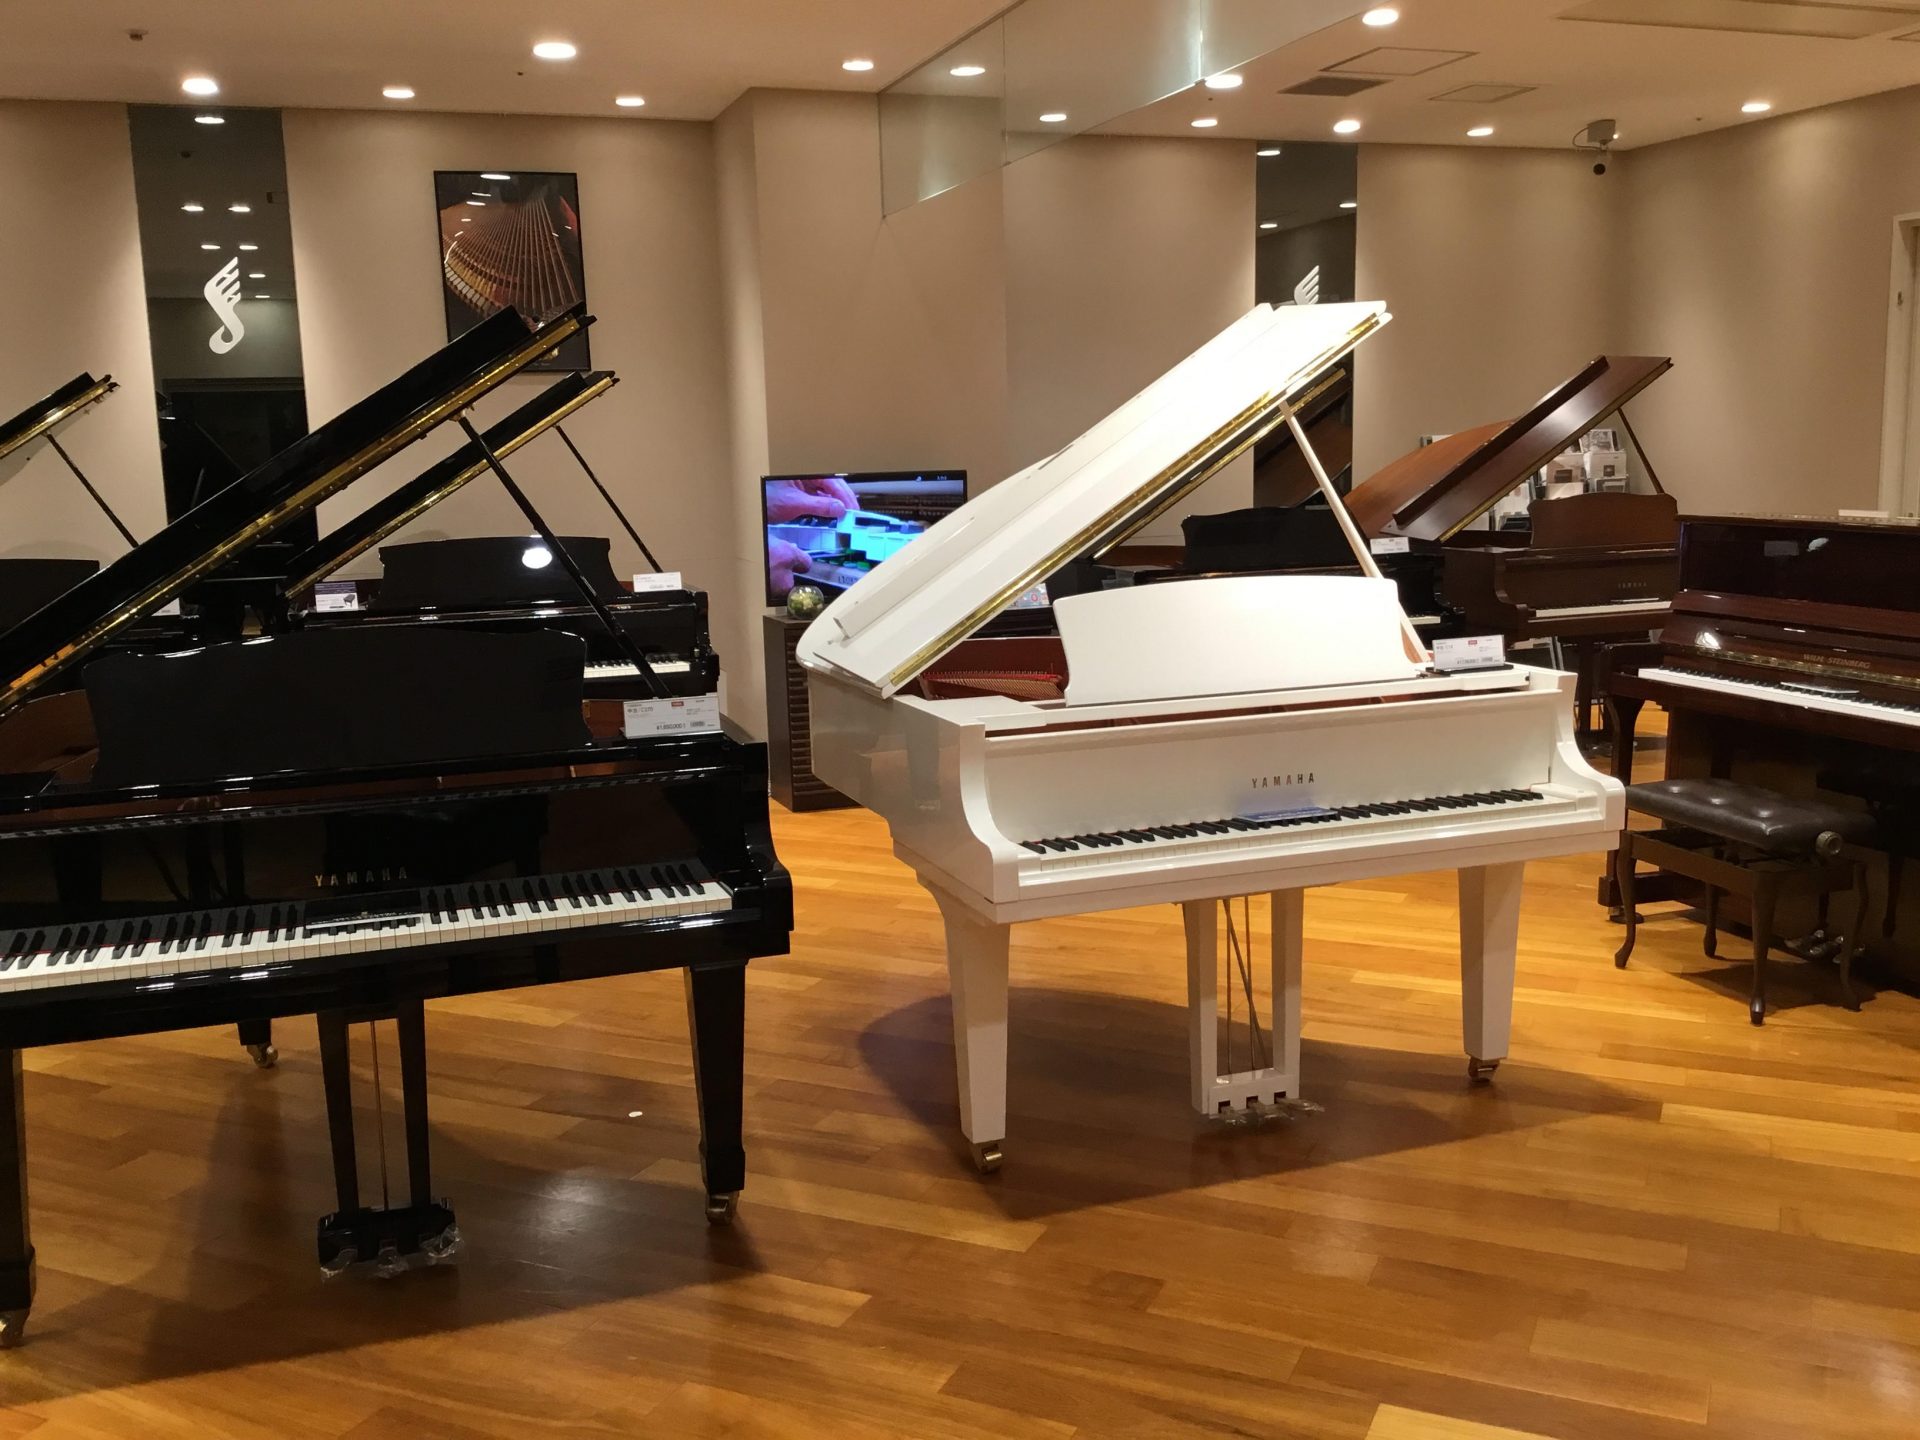 *ヤマハ人気のアップライトピアノ・グランドピアノをご紹介！ グランフロント大阪店では、厳選したグランドピアノ、アップライトピアノを多数展示致しております。]]ヤマハピアノは中古ピアノを中心に複数店頭展示しており24時間湿度管理された専用ルームにて、ゆっくりとご試弾が可能です。]]店頭に展示がないピア […]